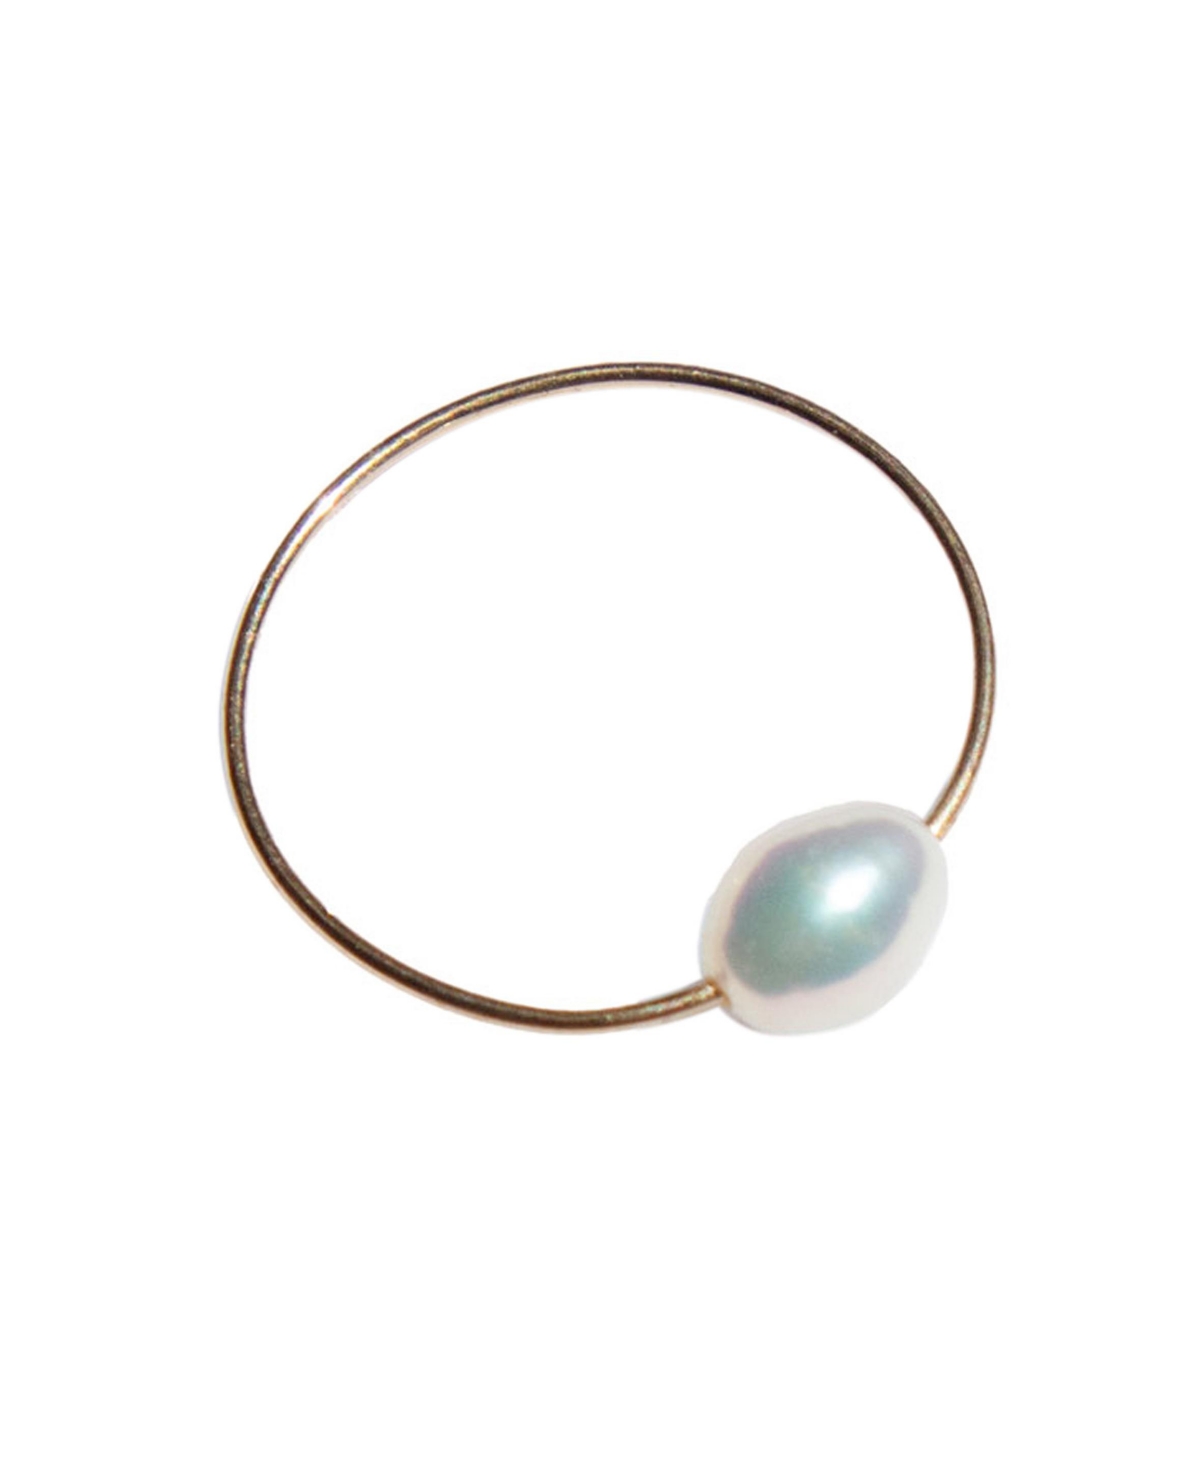 Eden - freshwater pearl skinny gold ring - White